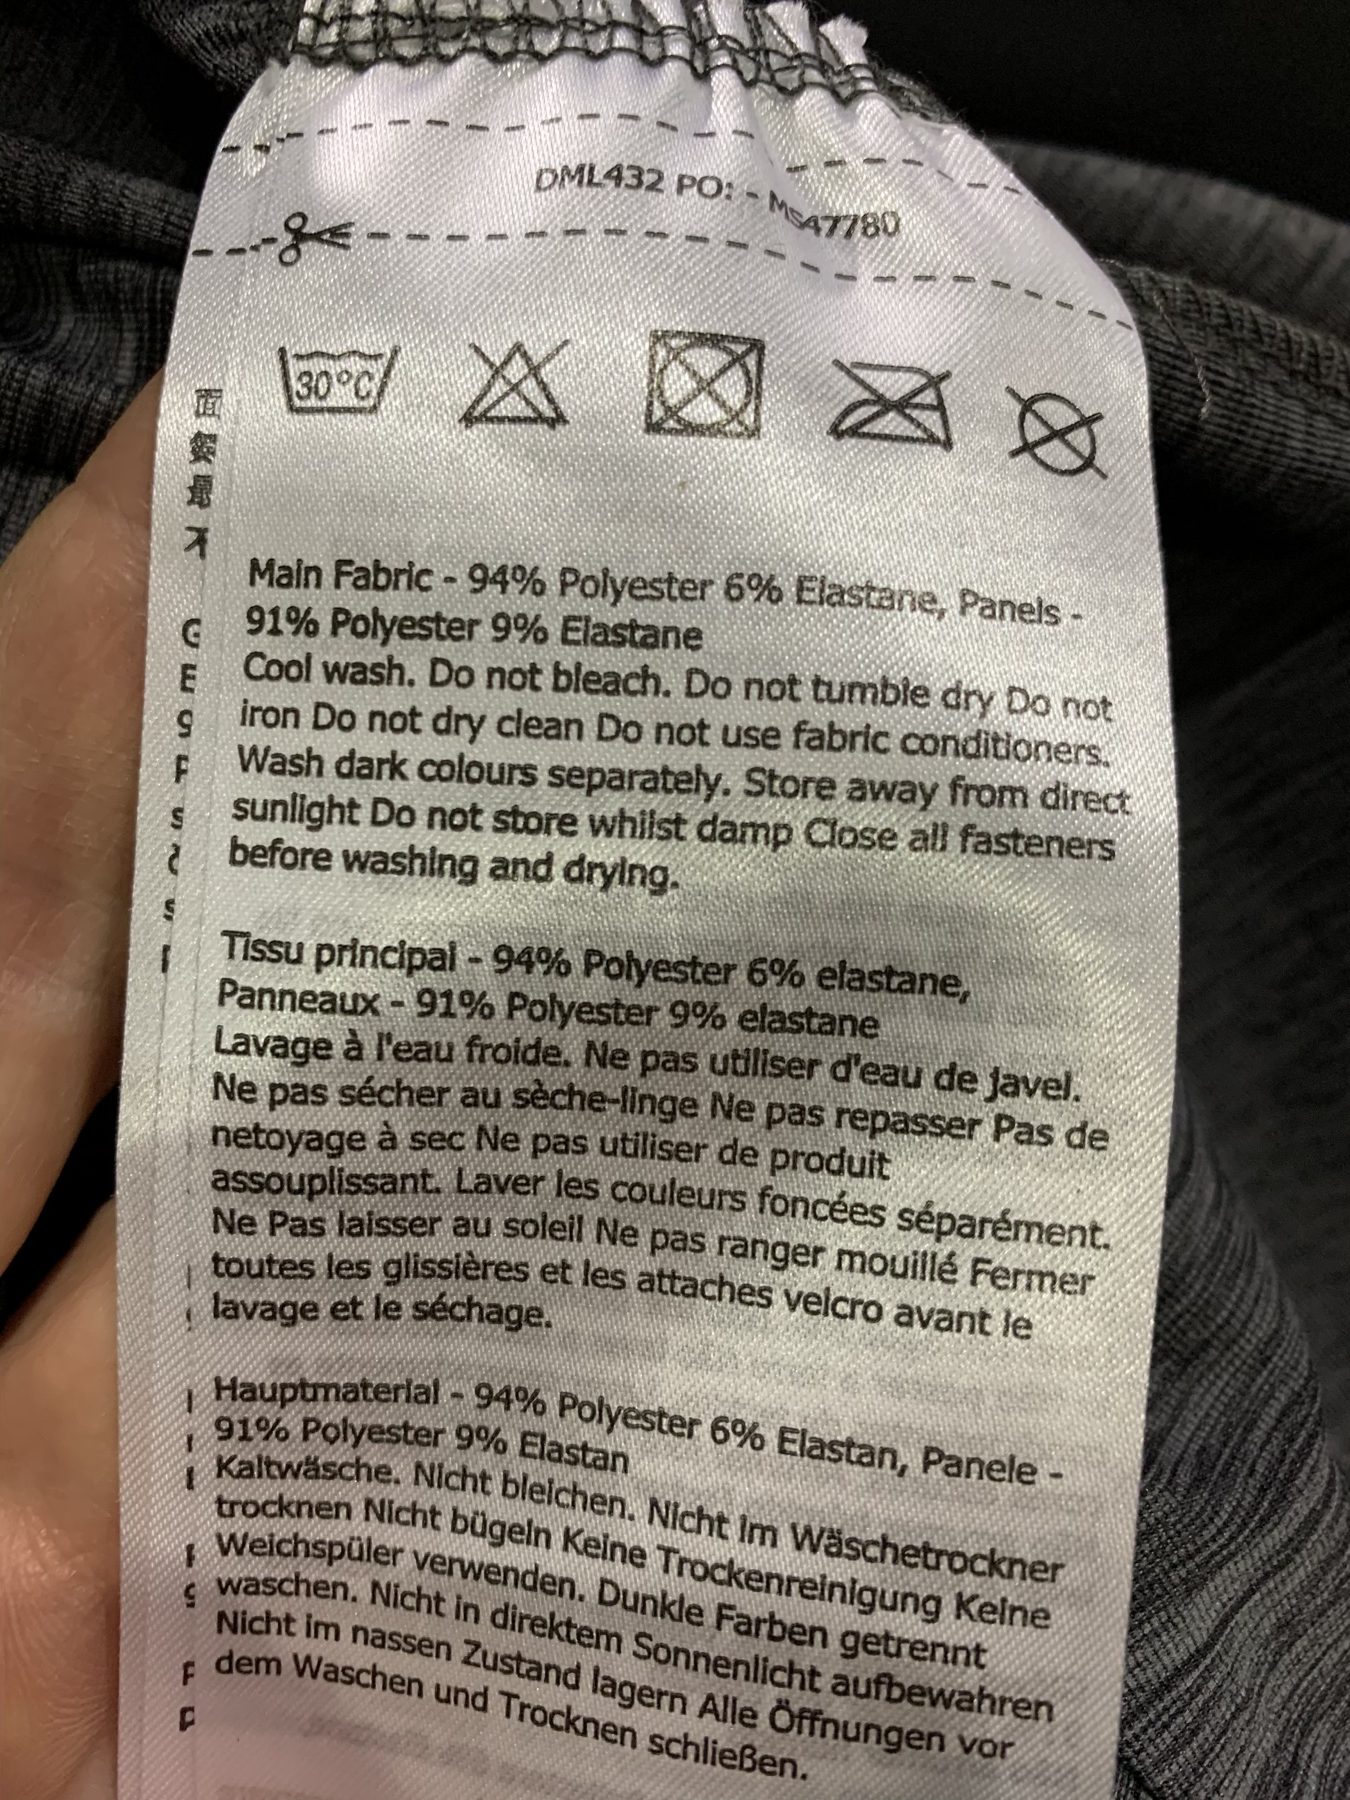 nkindle Washing Instructions